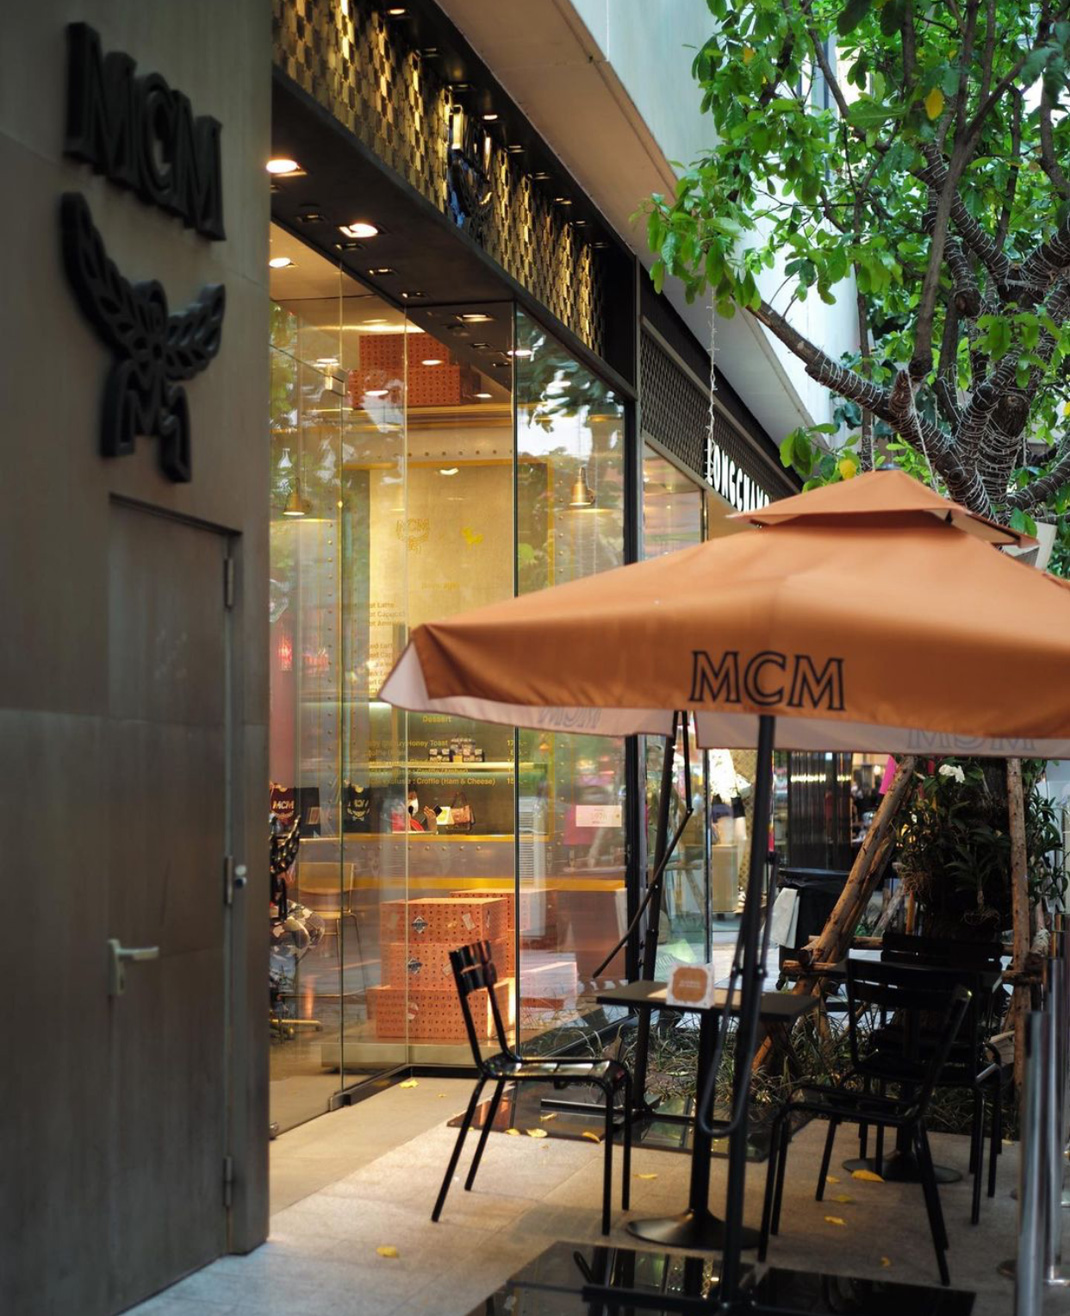 品牌联名MCM x After You咖啡店 泰国 曼谷 咖啡店 联名 装置 箱子 橙色 logo设计 vi设计 空间设计